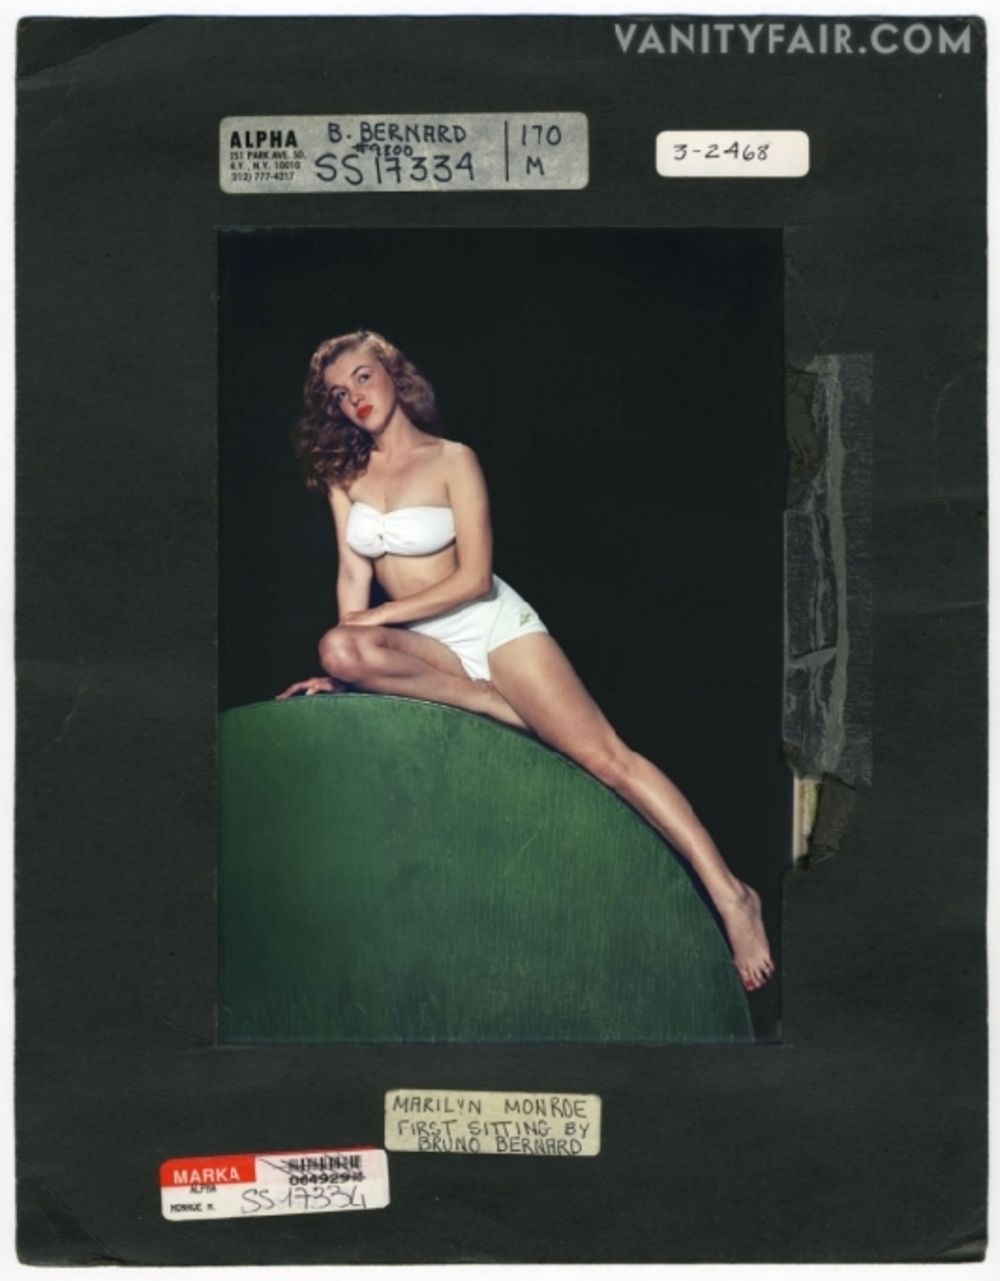 Ovih dana u svetskim knjižarama pojavila se monografija pod nazivom Marilyn Intimate Exposures u kojoj je ćerka fotografa Bruna Bernara, Suzan, sakupila do sada neobjavljivane fotografije glumice Merilin Monro. U ovom svojevrsnom zborniku moguće je ispratiti m